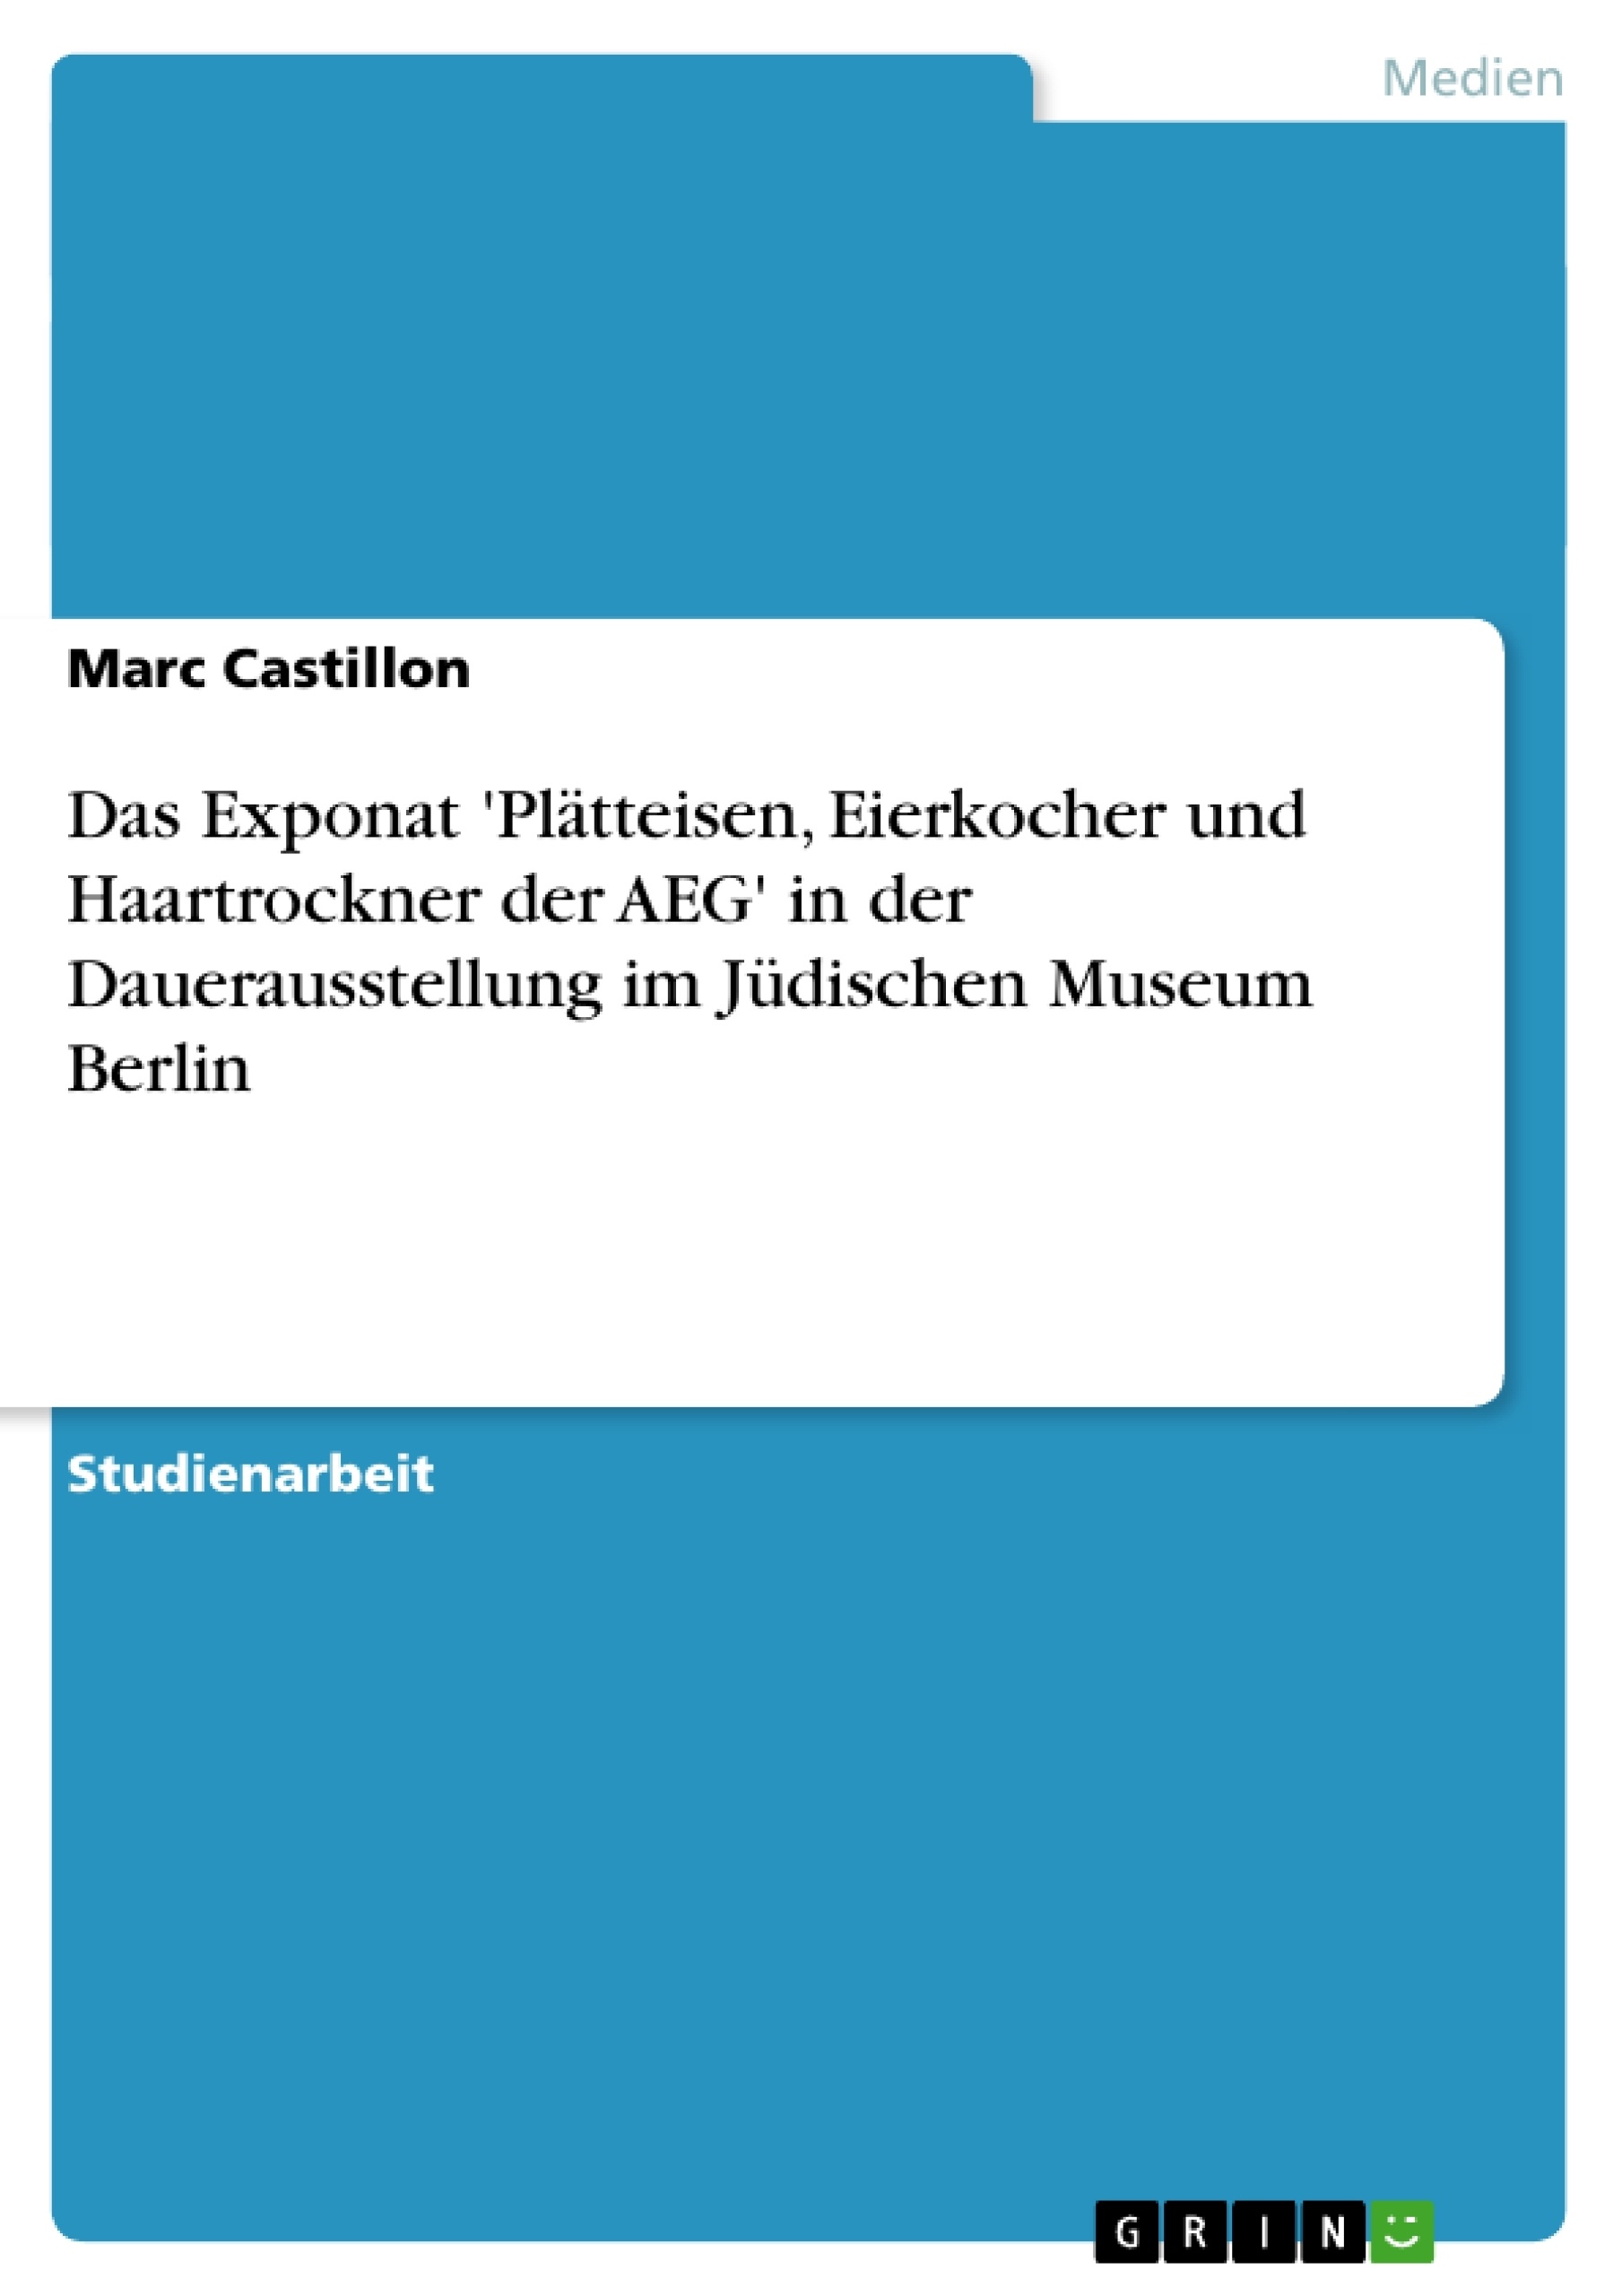 Titre: Das Exponat  'Plätteisen, Eierkocher und Haartrockner der AEG'  in der Dauerausstellung im Jüdischen Museum Berlin